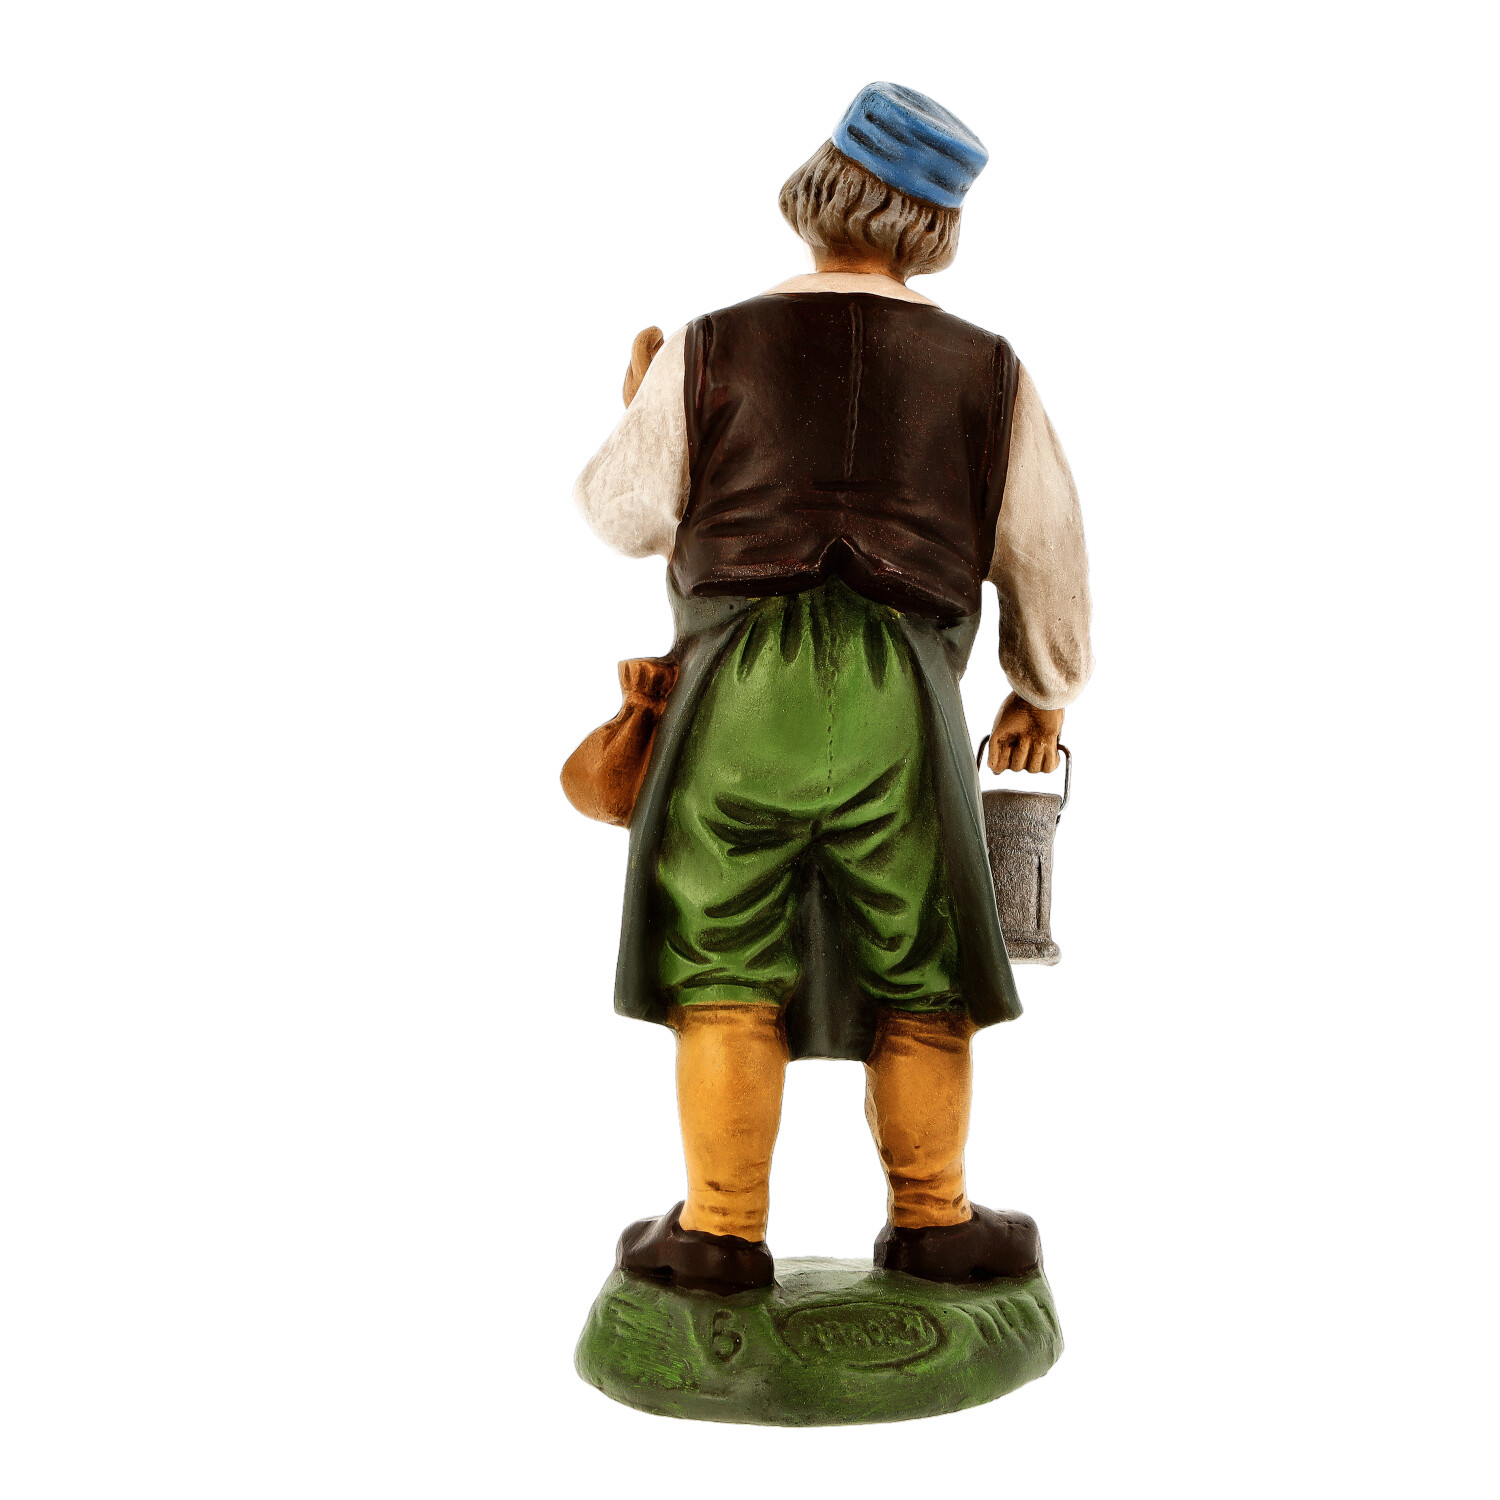 Wirt mit Laterne, zu 14cm Figuren - Marolin Krippenfigur - made in Germany